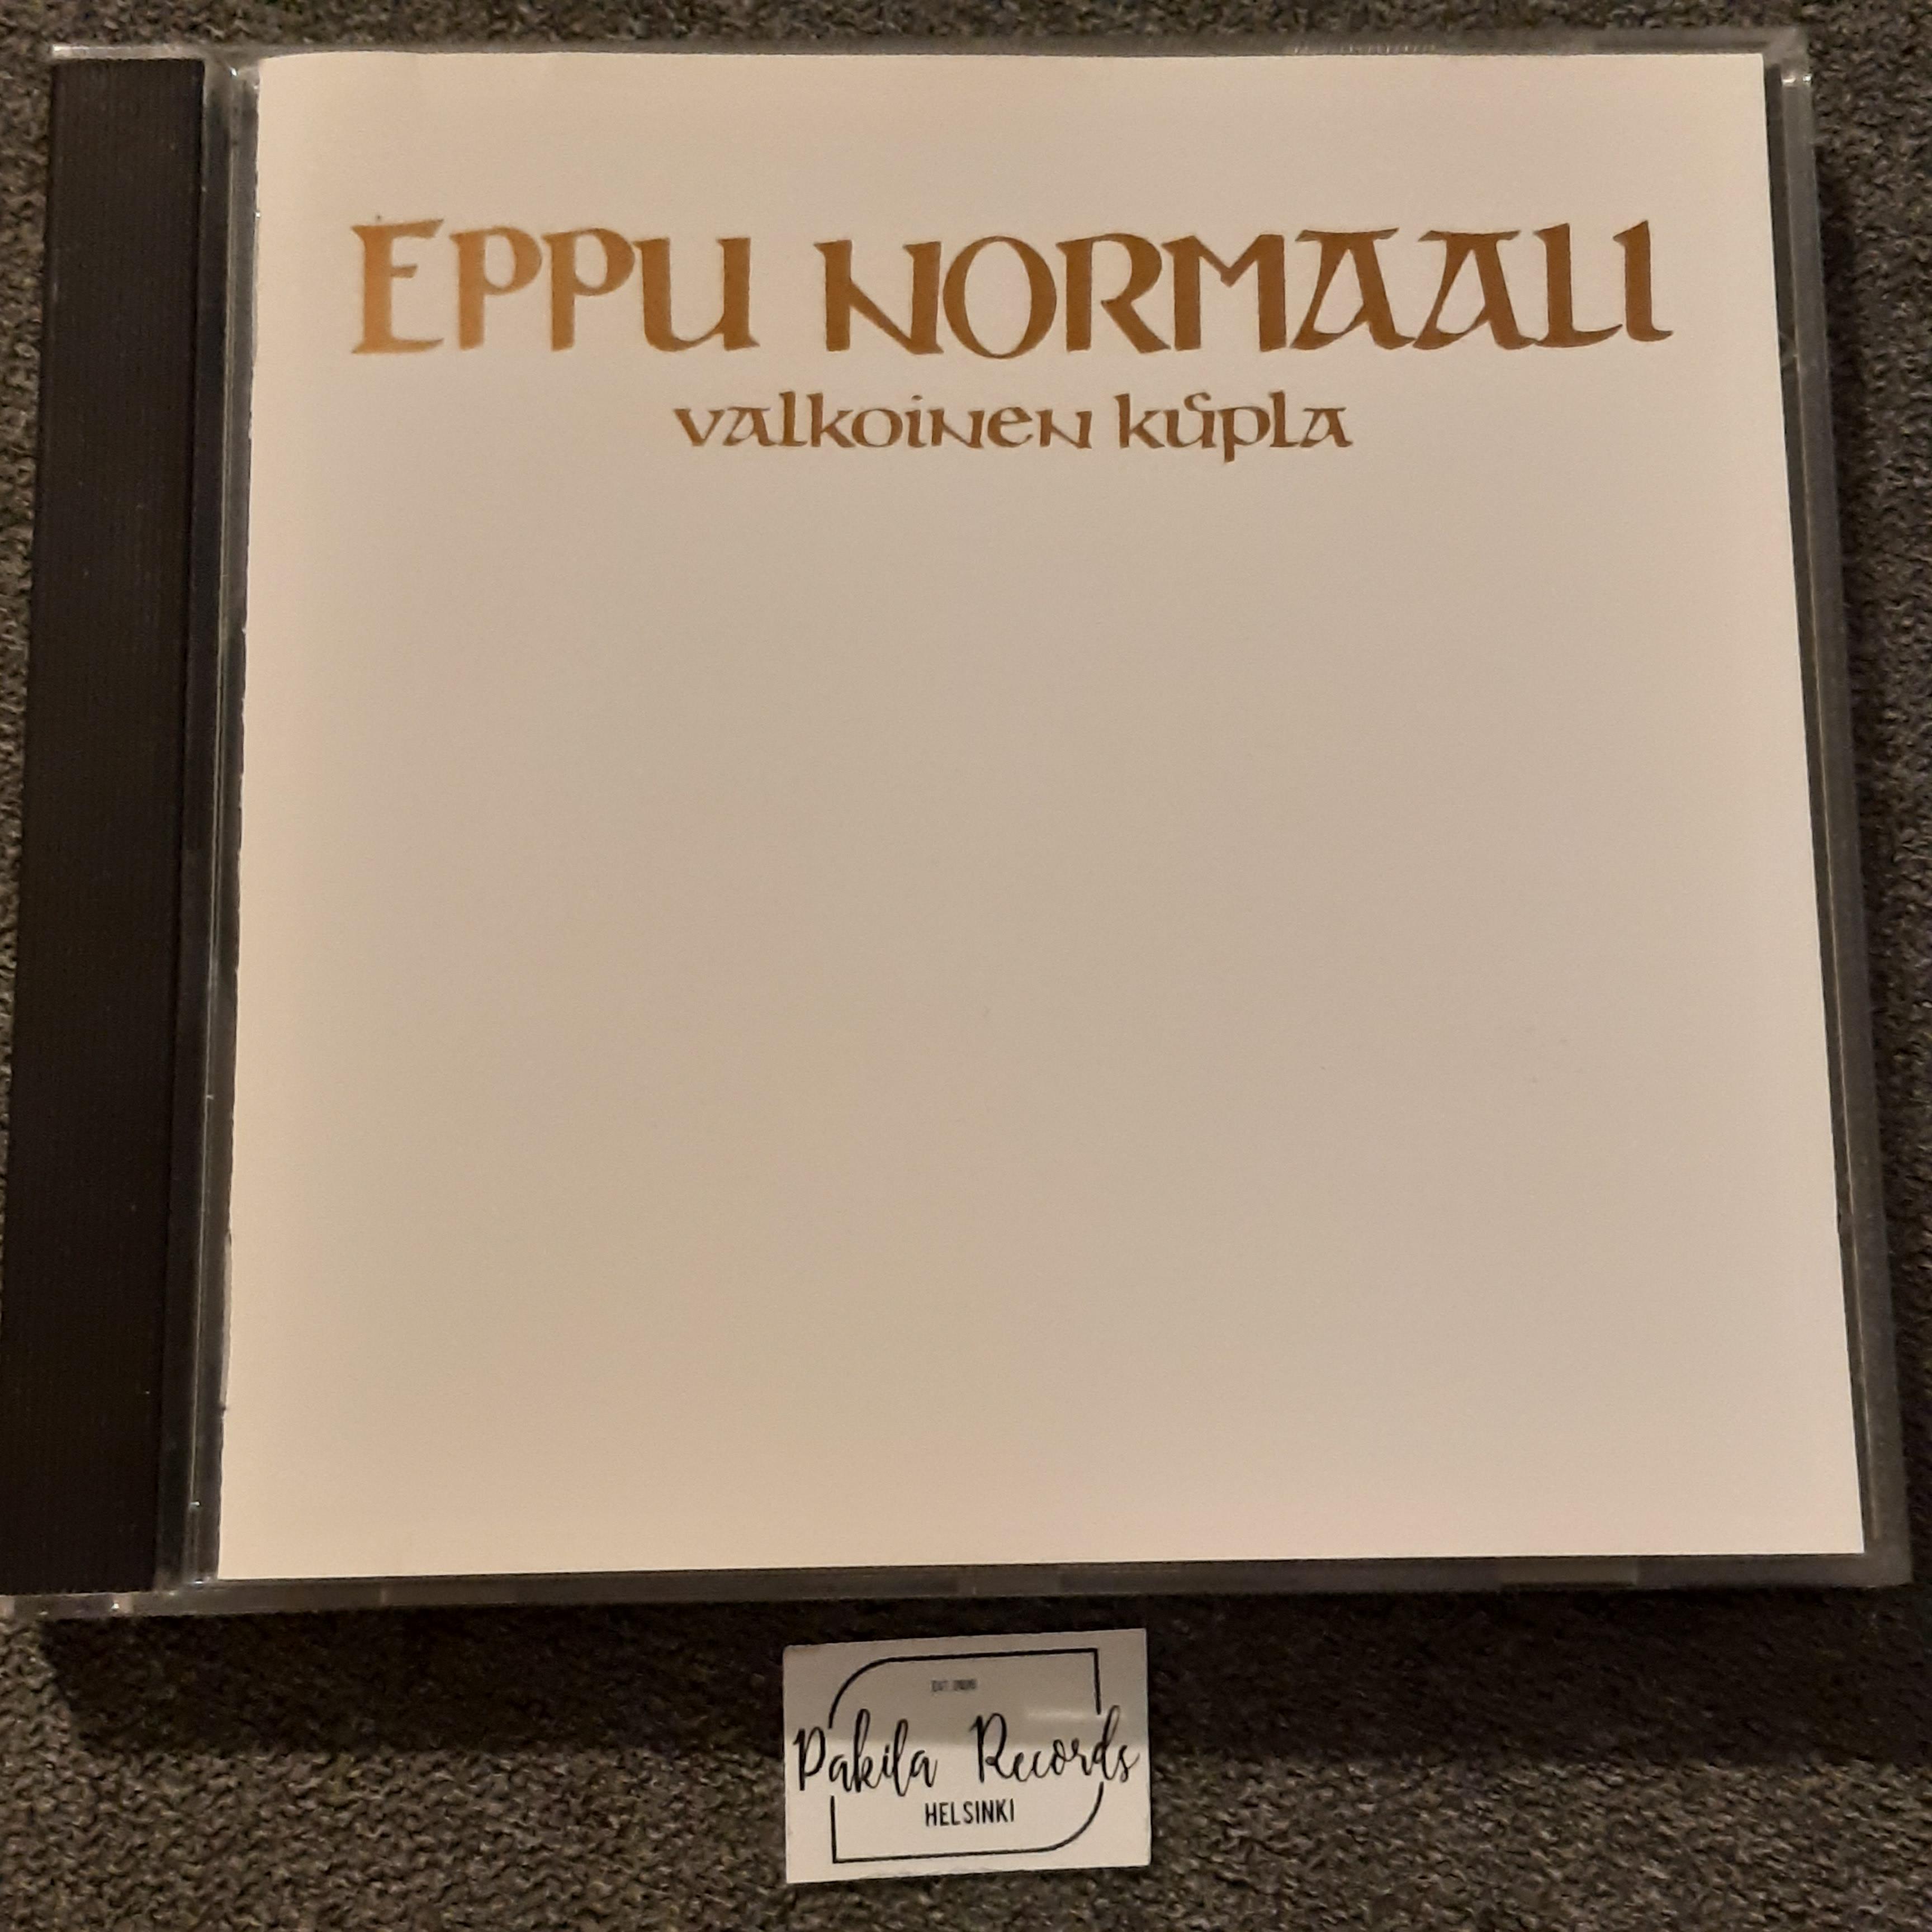 Eppu Normaali - Valkoinen kupla - CD (käytetty)